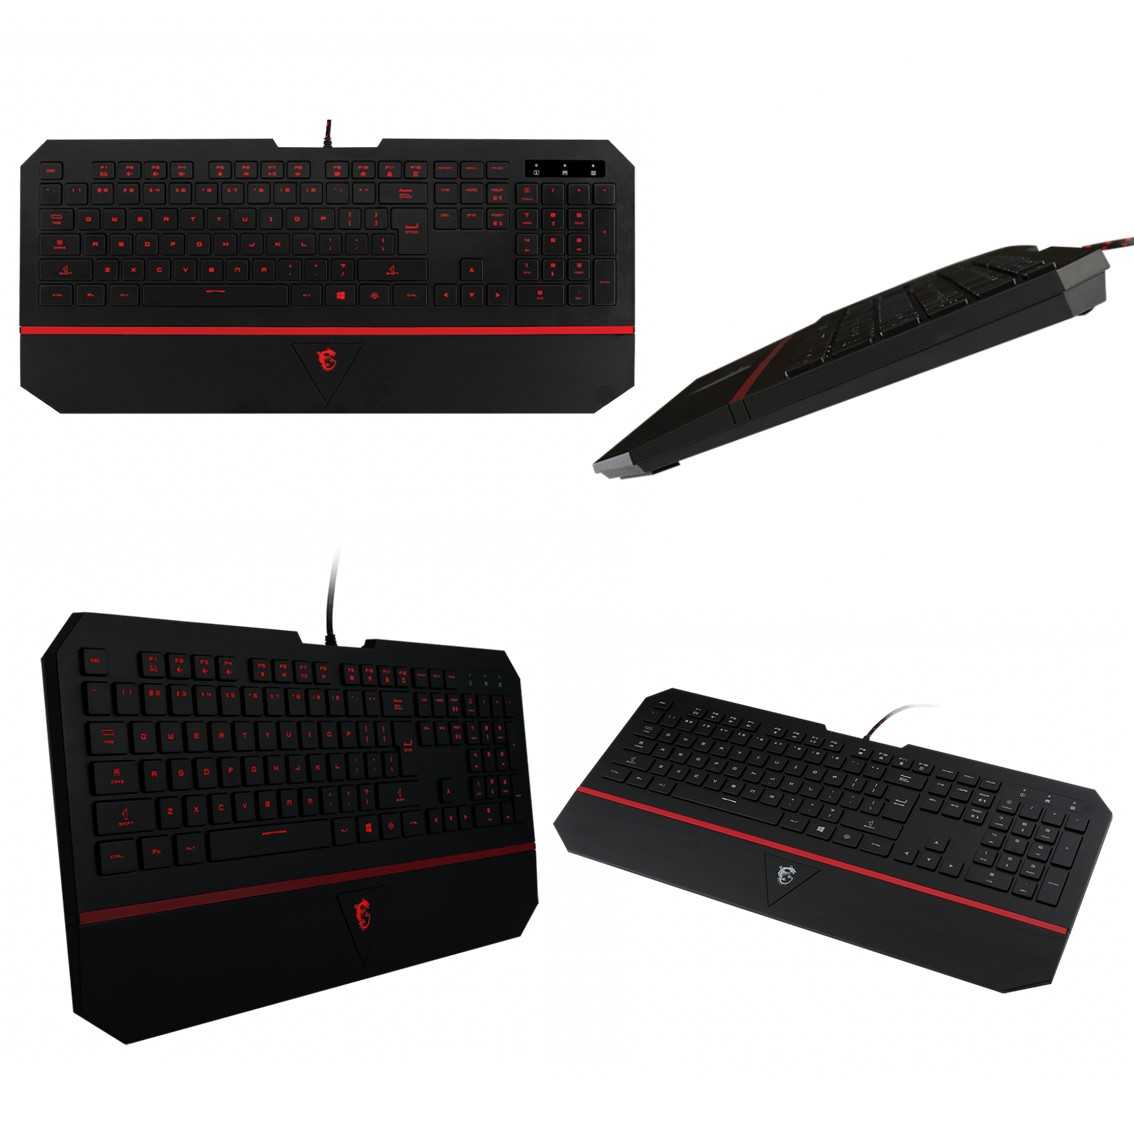 【鍵盤滑鼠超值組】微星 MSI DS4100 薄膜式 七色 電競鍵盤+DS B1 光學 電競滑鼠